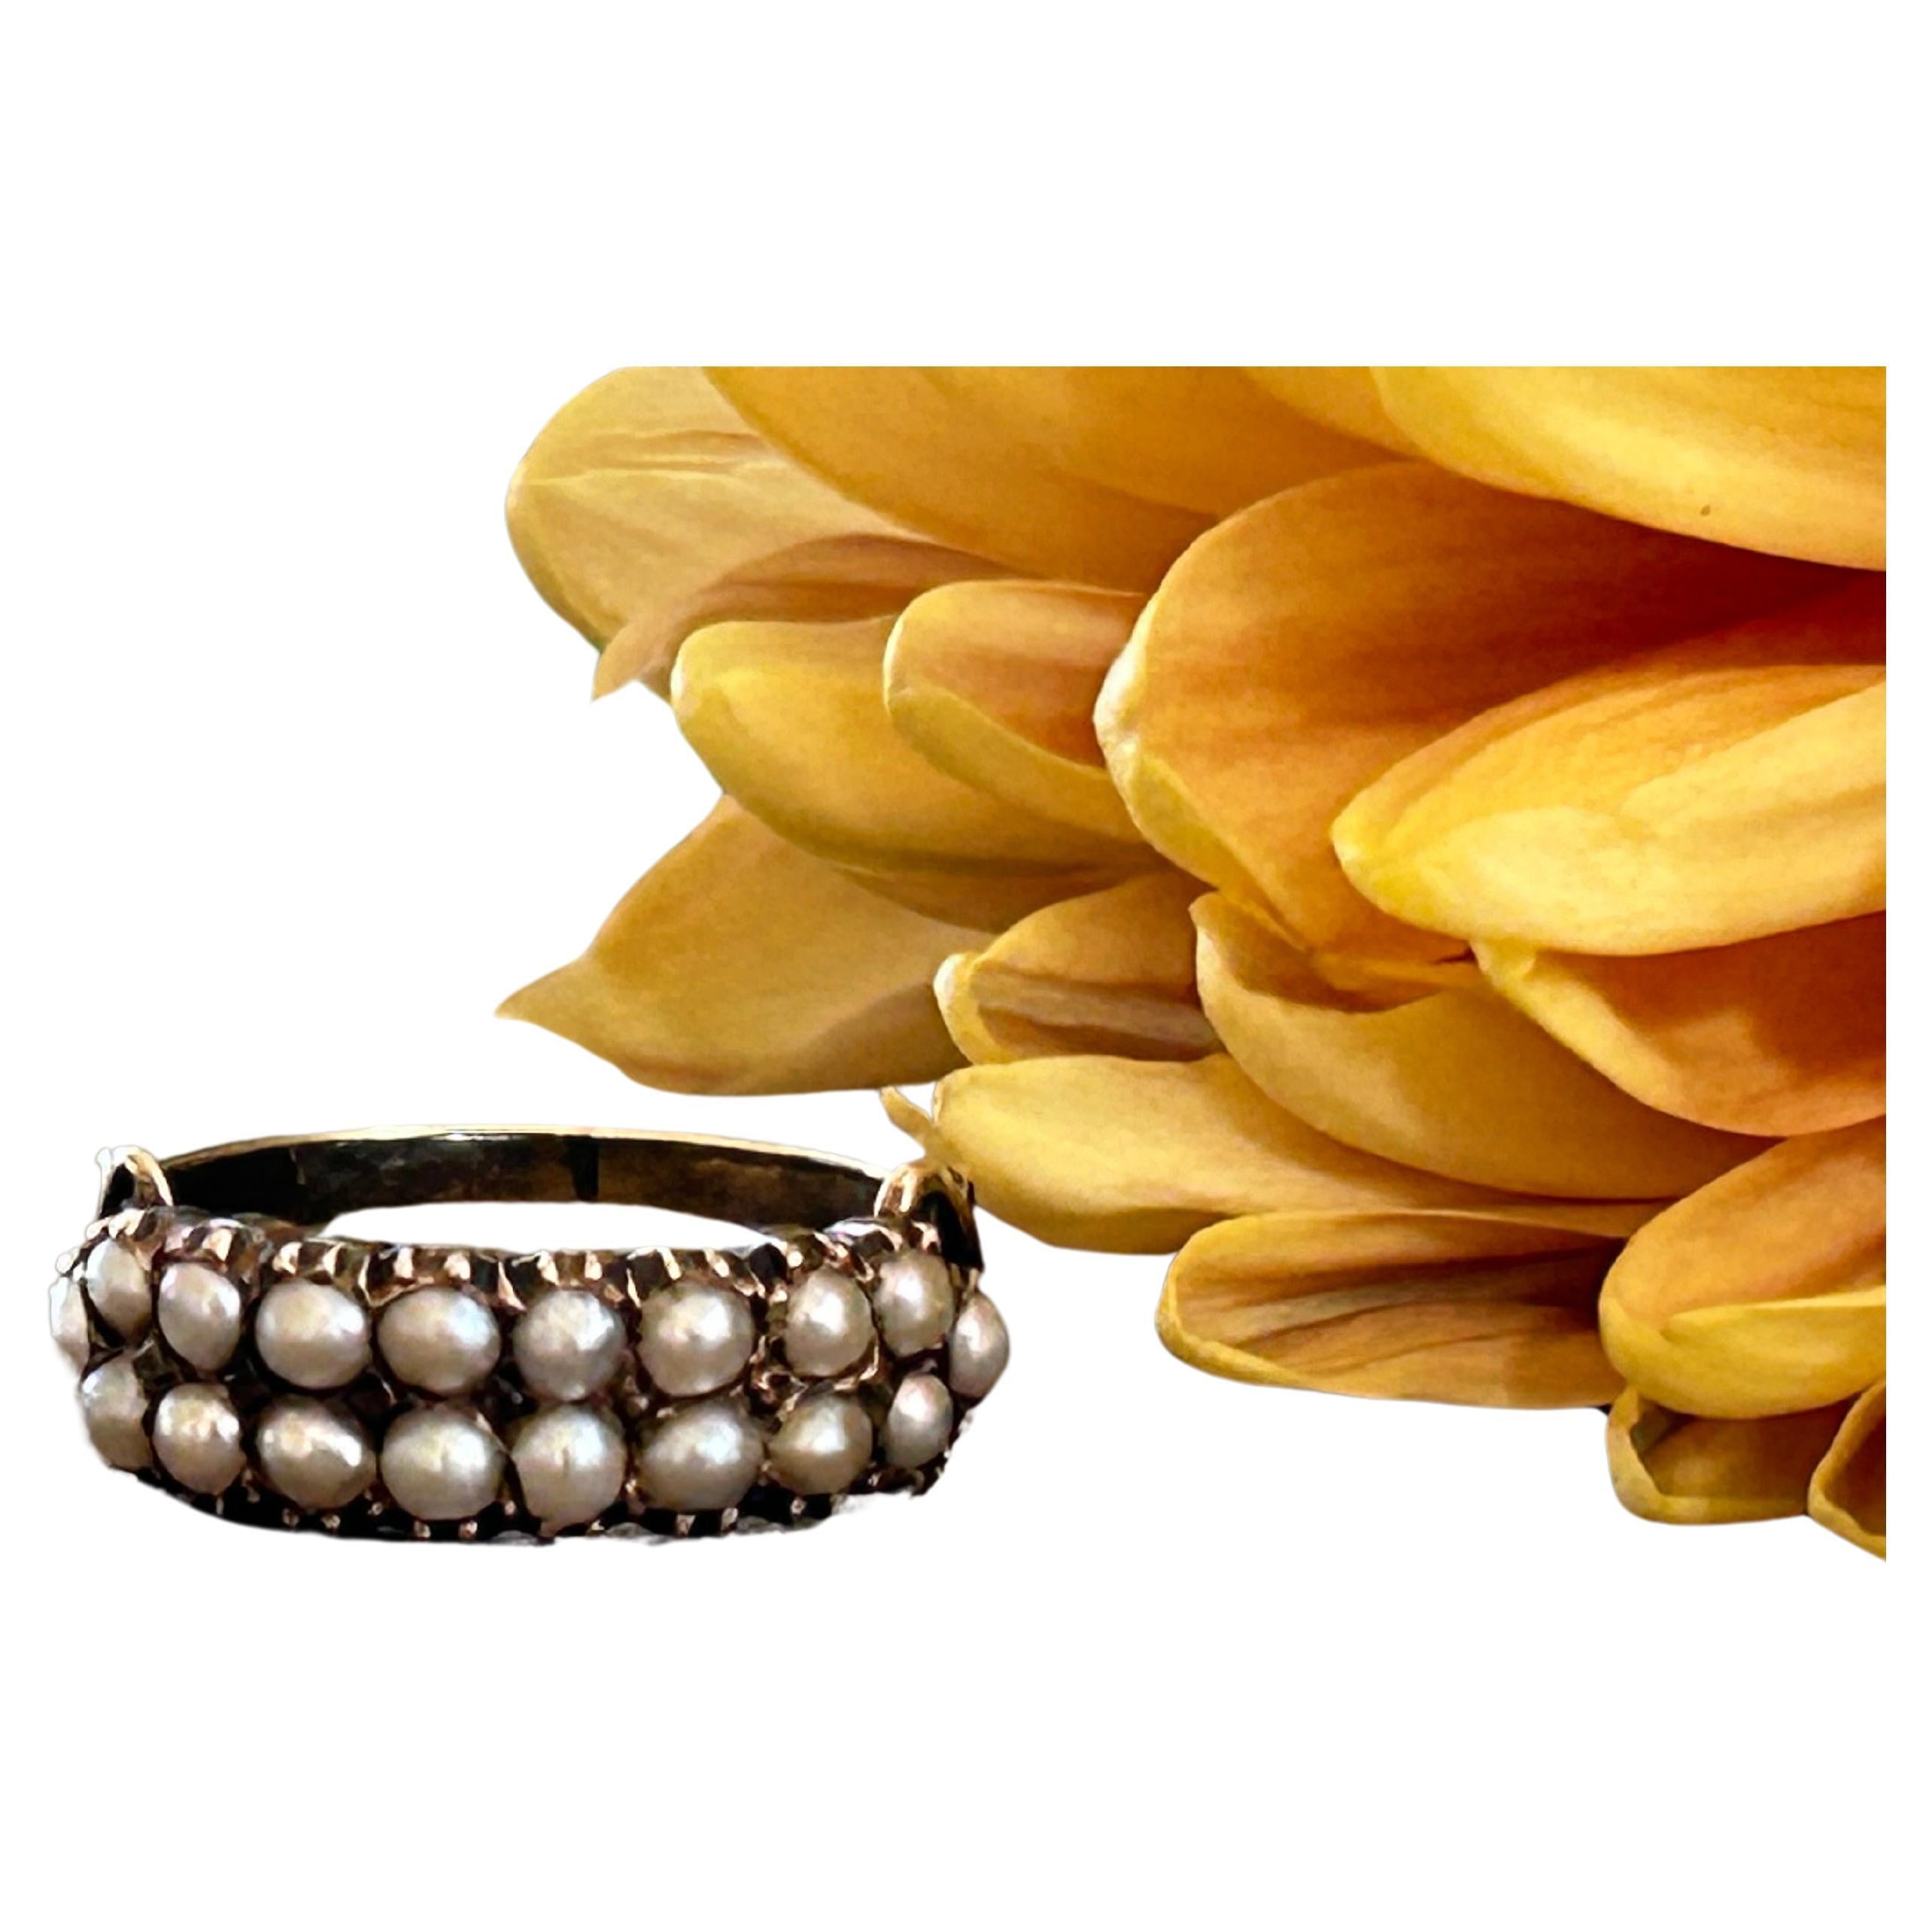 Ein prächtiger spätgeorgianischer/frühviktorianischer zweireihiger Perlenring. Dieser exquisit aus 14-karätigem Gold gefertigte Ring ist ein atemberaubendes Beispiel für die Vorliebe der damaligen Zeit für komplizierte Designs und luxuriöse